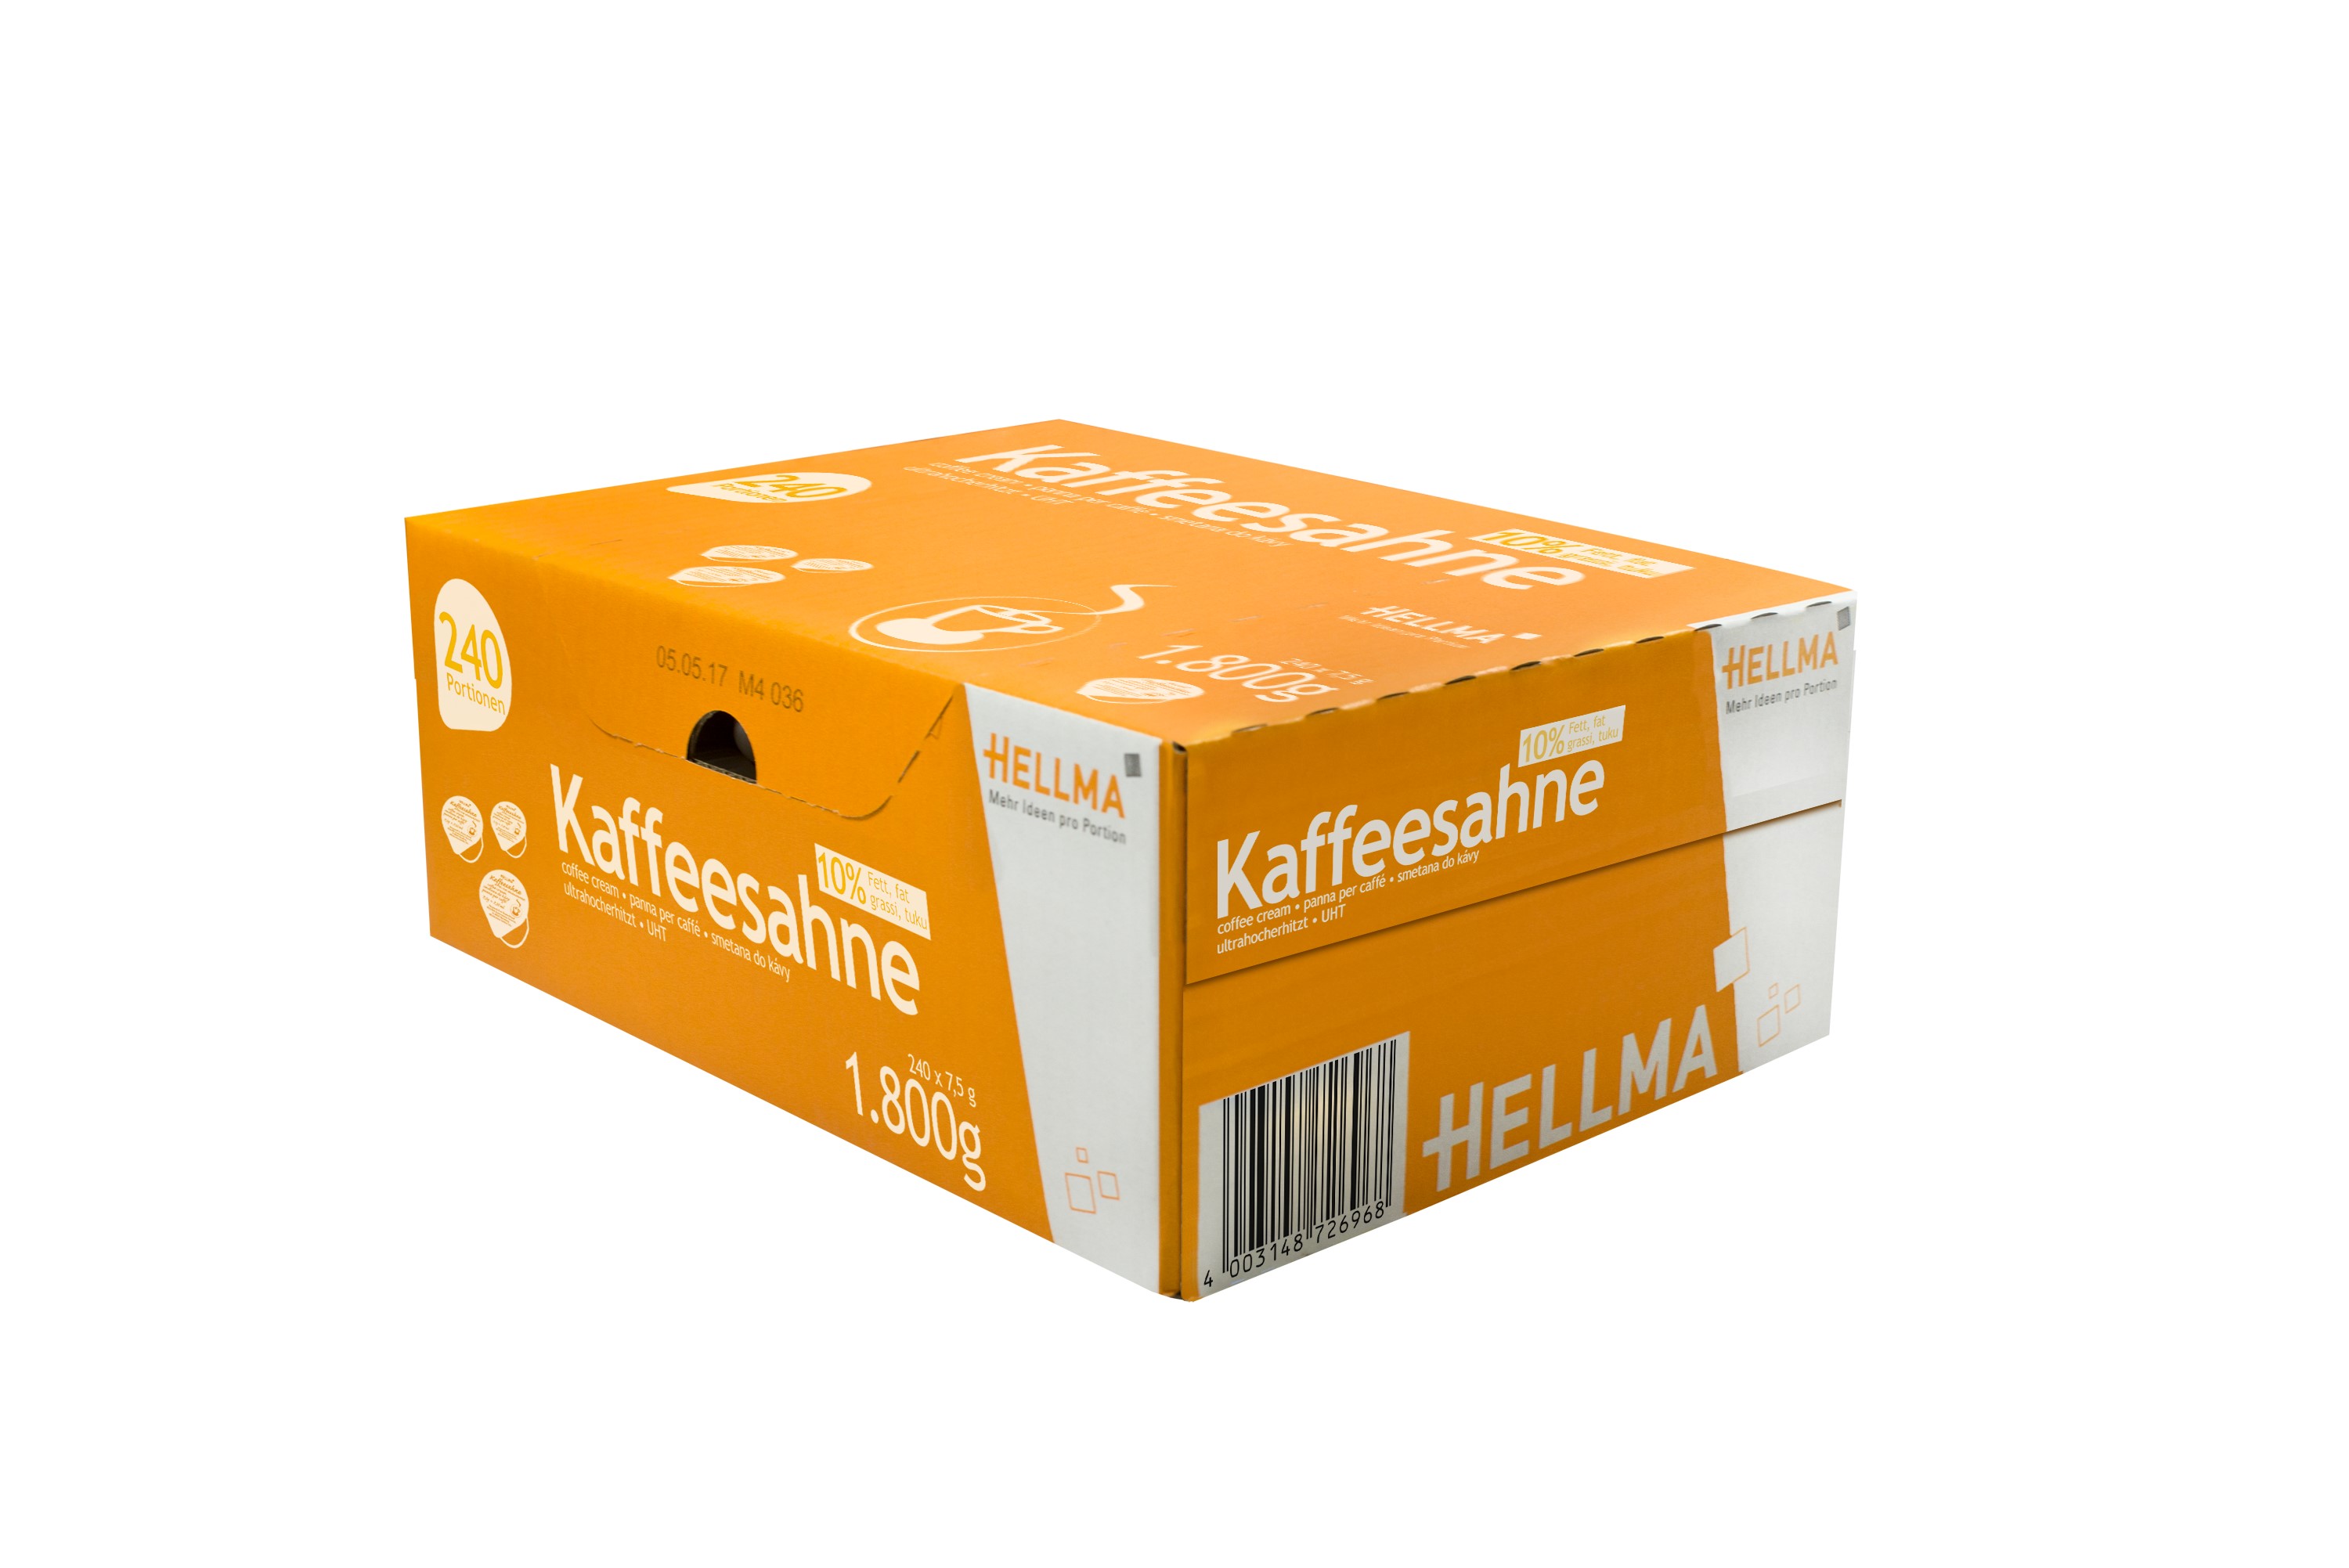 Hellma Kaffeesahne mit 10 % Fett, Inhalt: 240 Stück Portionspackungen/ Tassenpackungen á 7,5 g je Karton